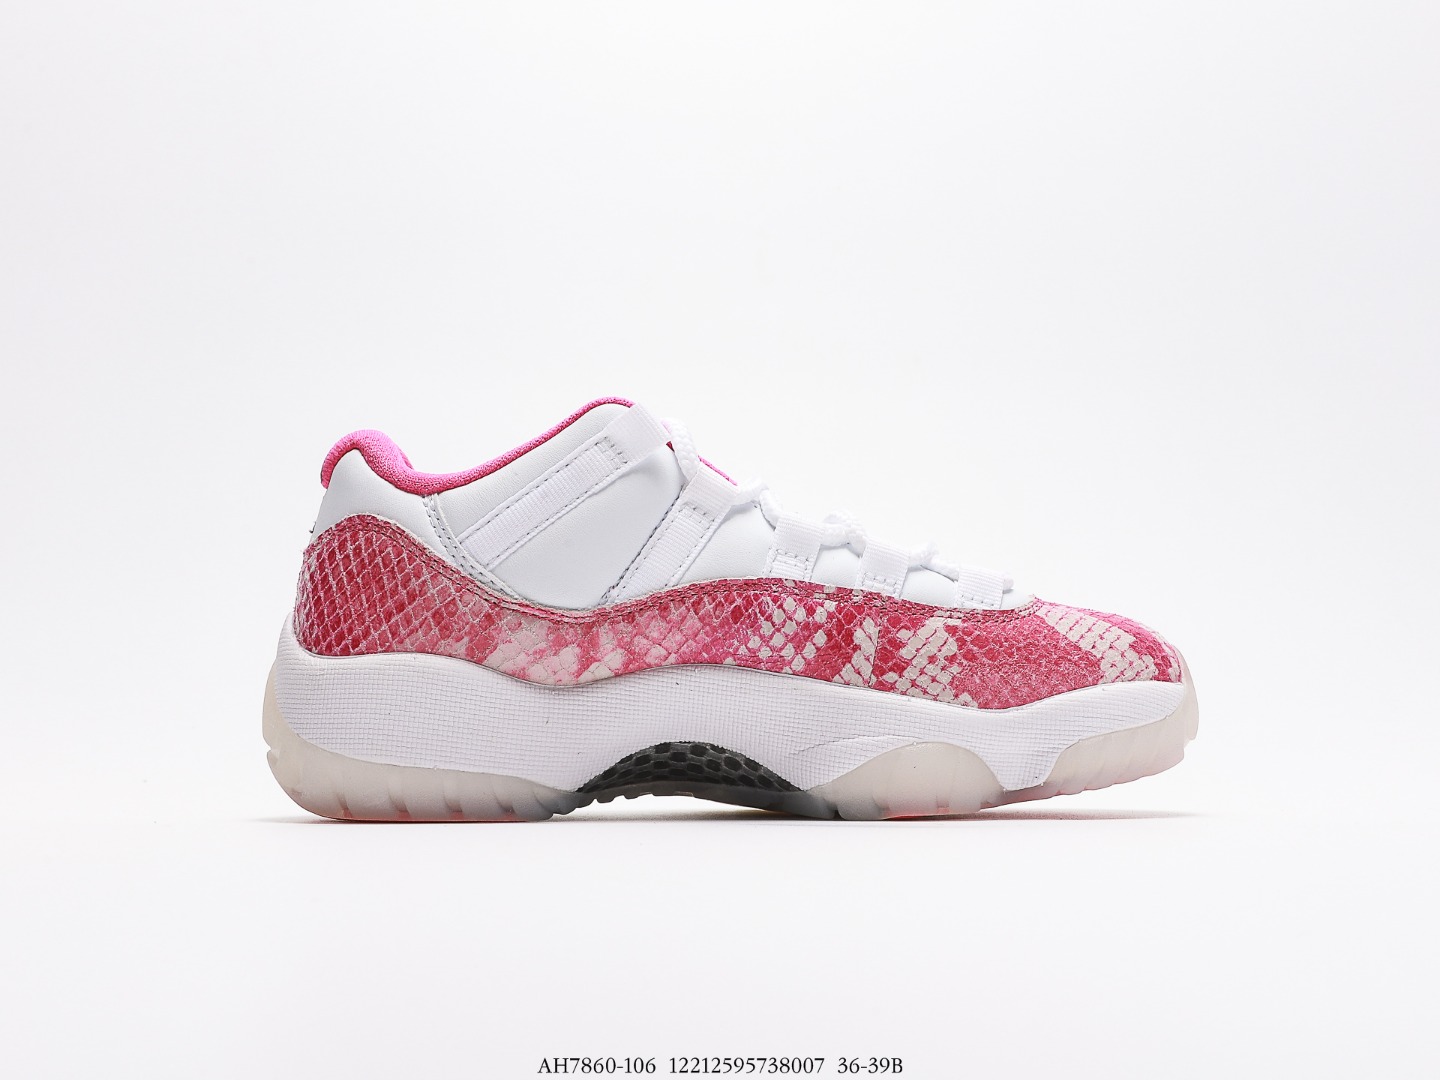 Air Jordan AJ11 Retro Low (en inglés)
Pink Snakeskin (2019) AH7860-106